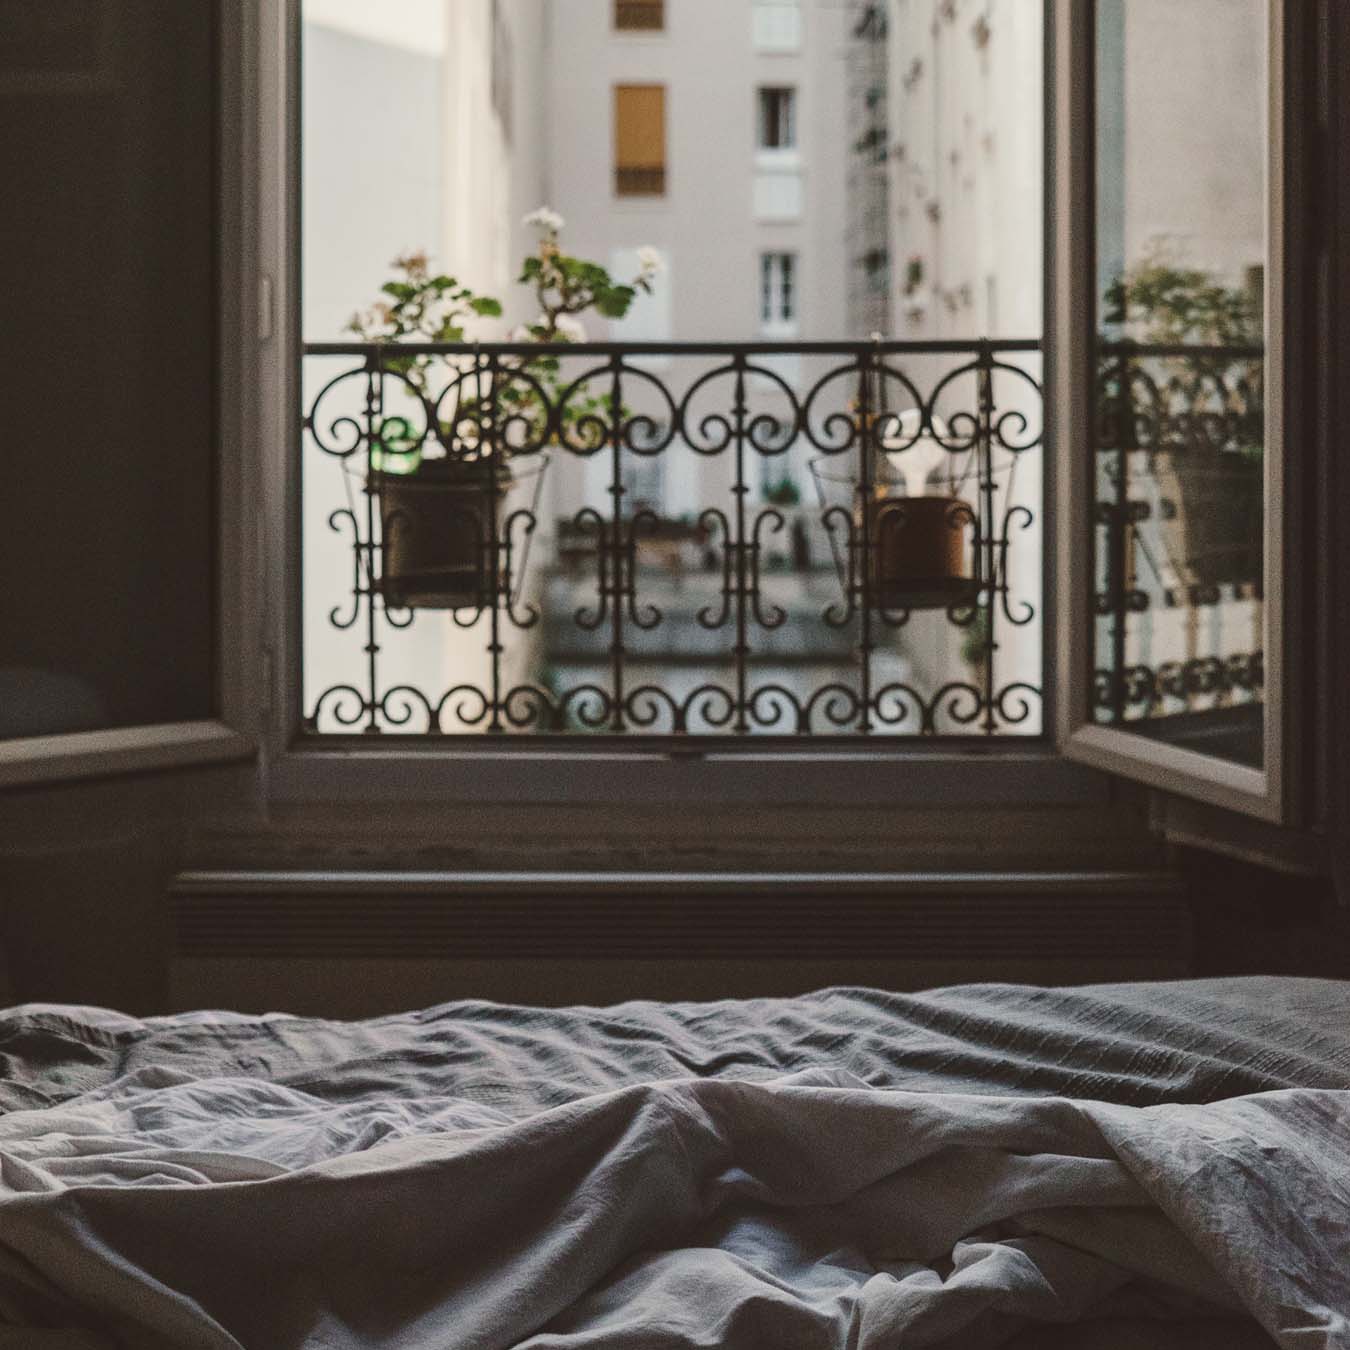 Ein gemachtes Bett steht vor einem offenen Fenster mit Blumen.